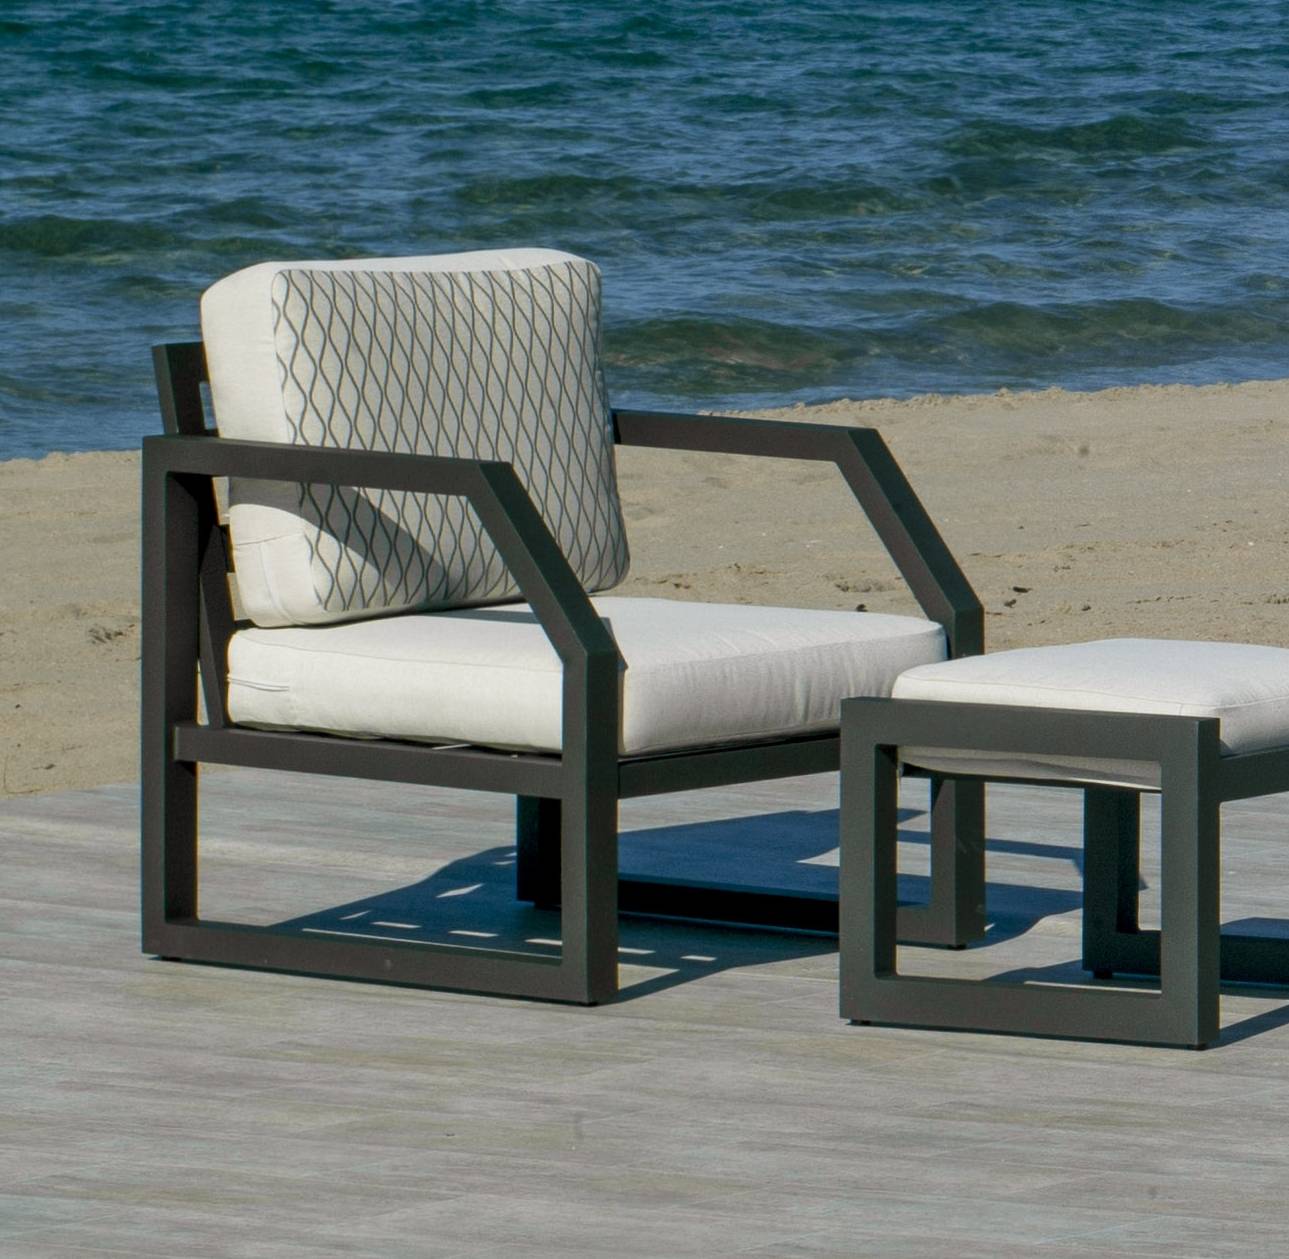 Set Aluminio Luxe Bellagio-9 - Conjunto aluminio: 1 sofá 2 plazas + 2 sillones + mesa de centro + 2 taburetes. Colores: blanco, antracita, champagne, plata o marrón.